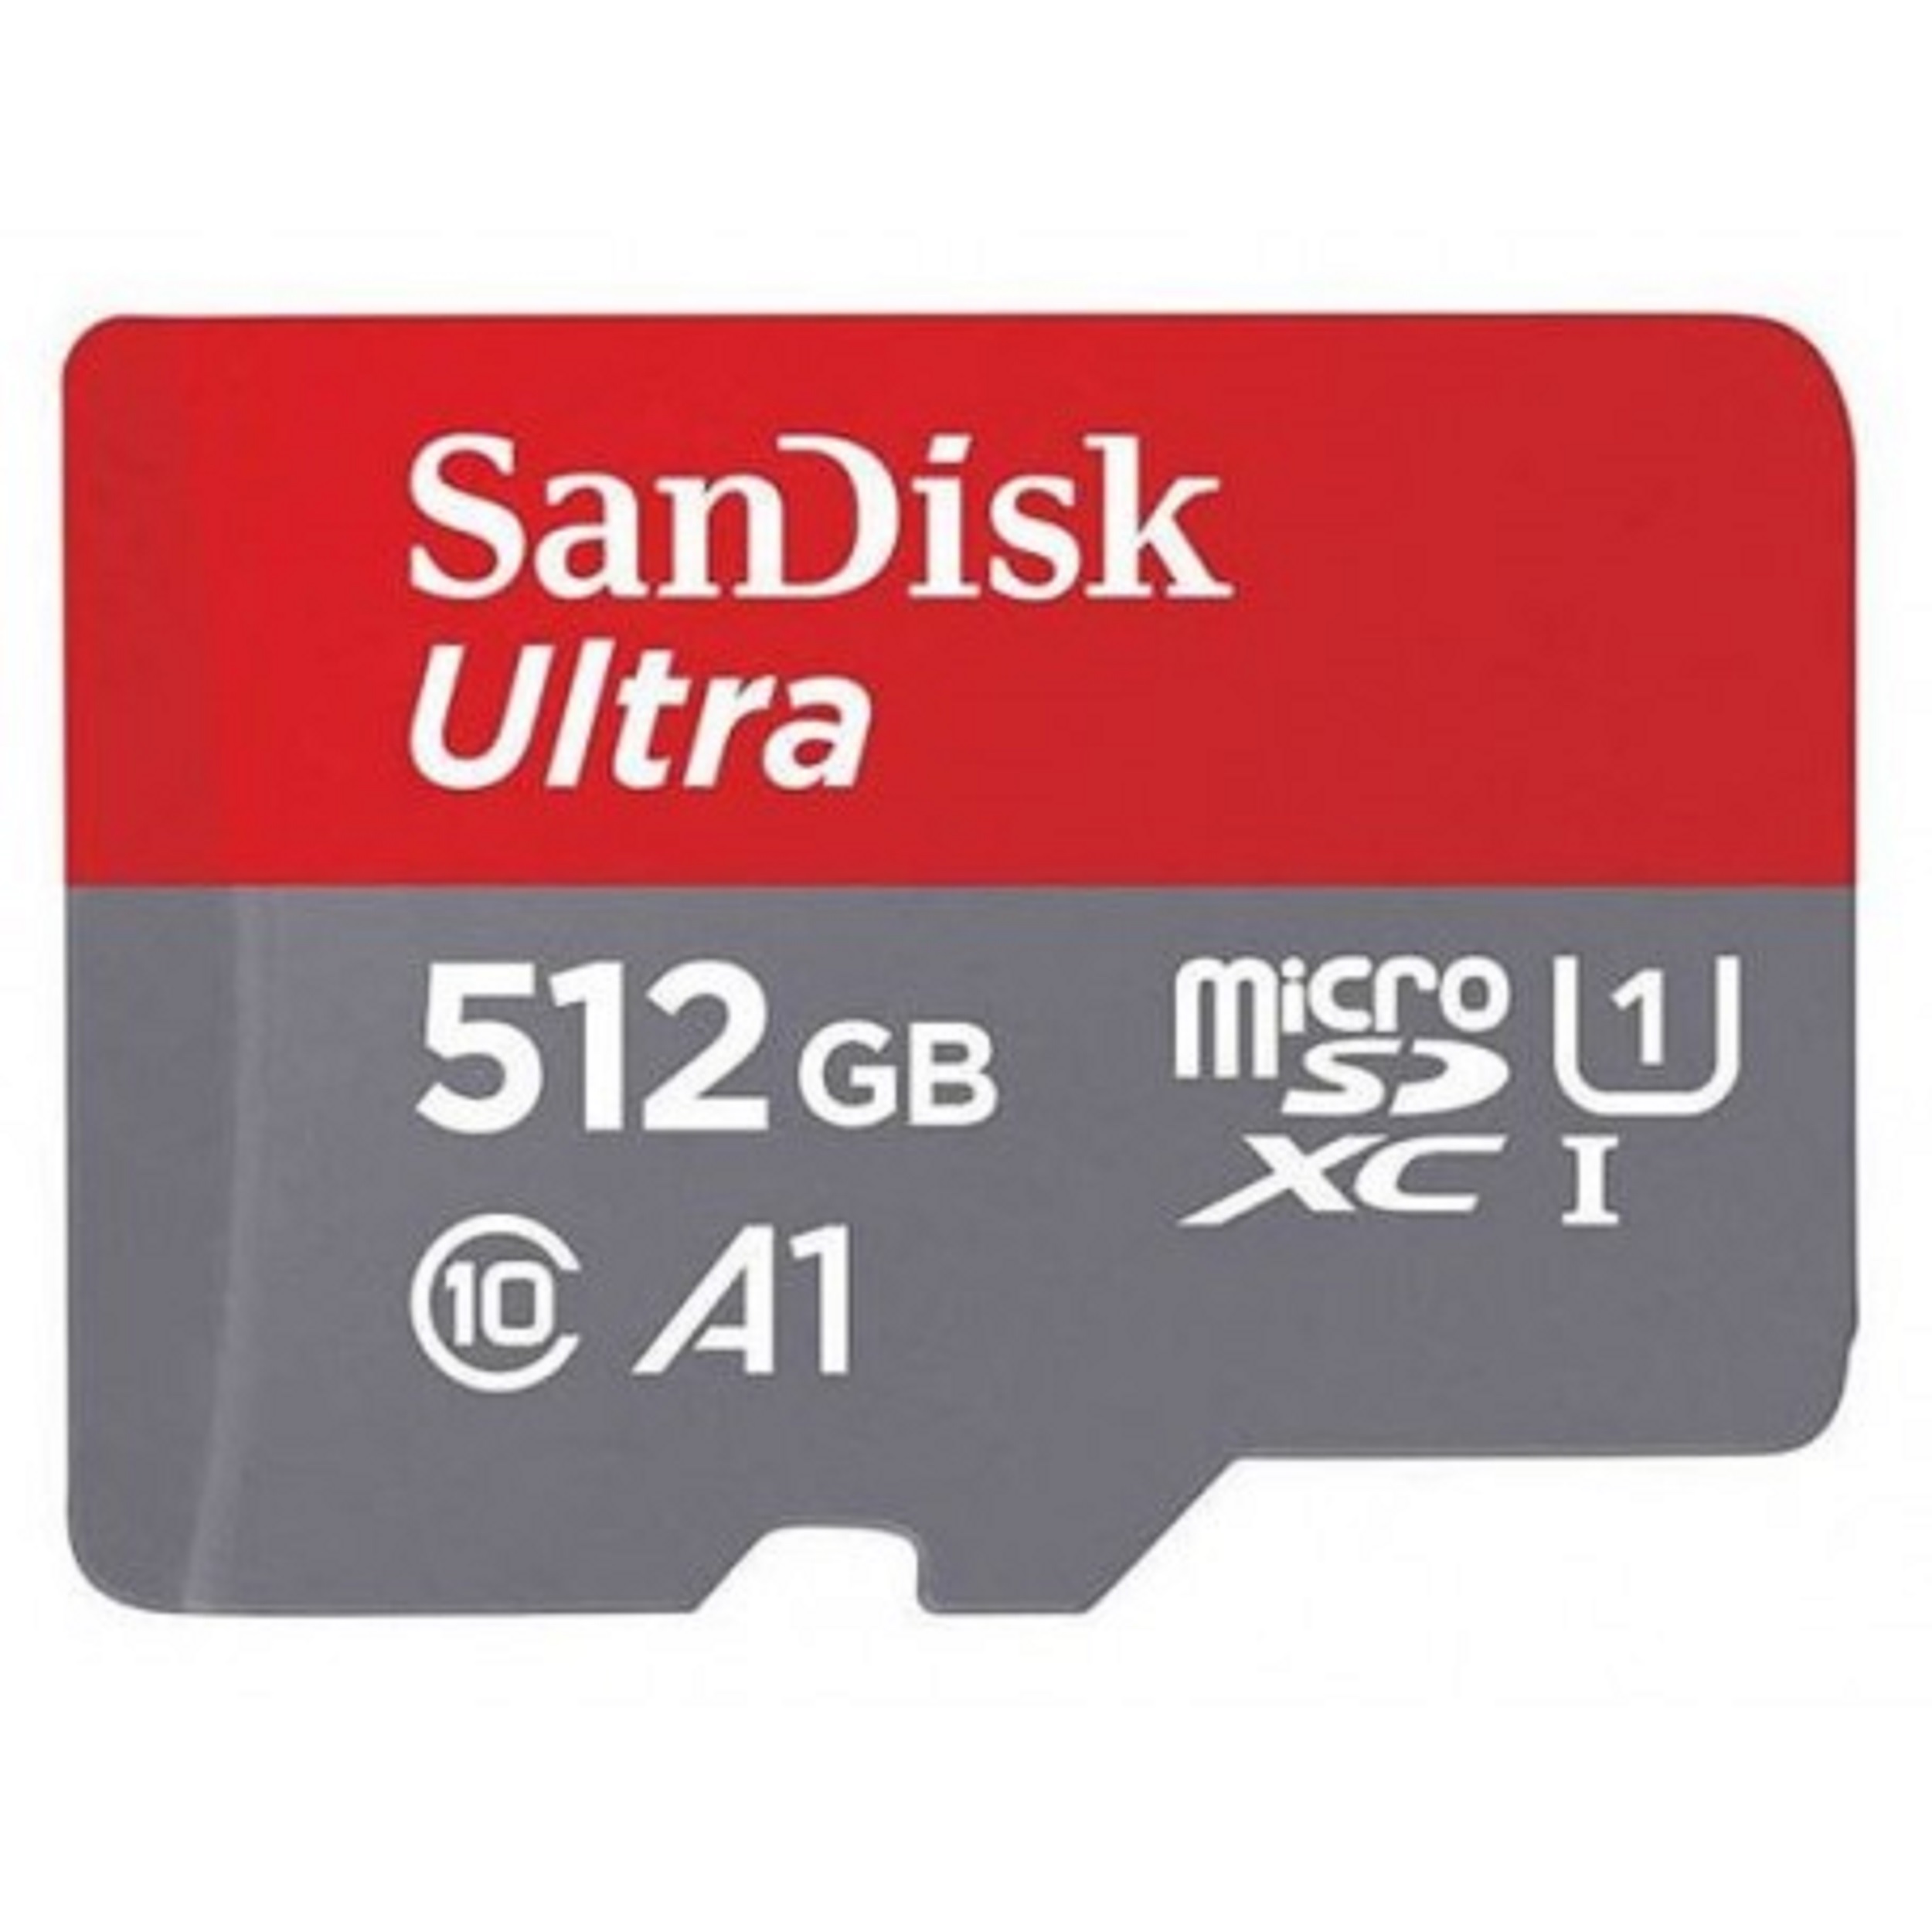 نکته خرید - قیمت روز کارت حافظه microSDXC سن دیسک مدل Ultra A1 کلاس 10 استاندارد UHS-I سرعت 150MBps ظرفیت 512 گیگابایت خرید